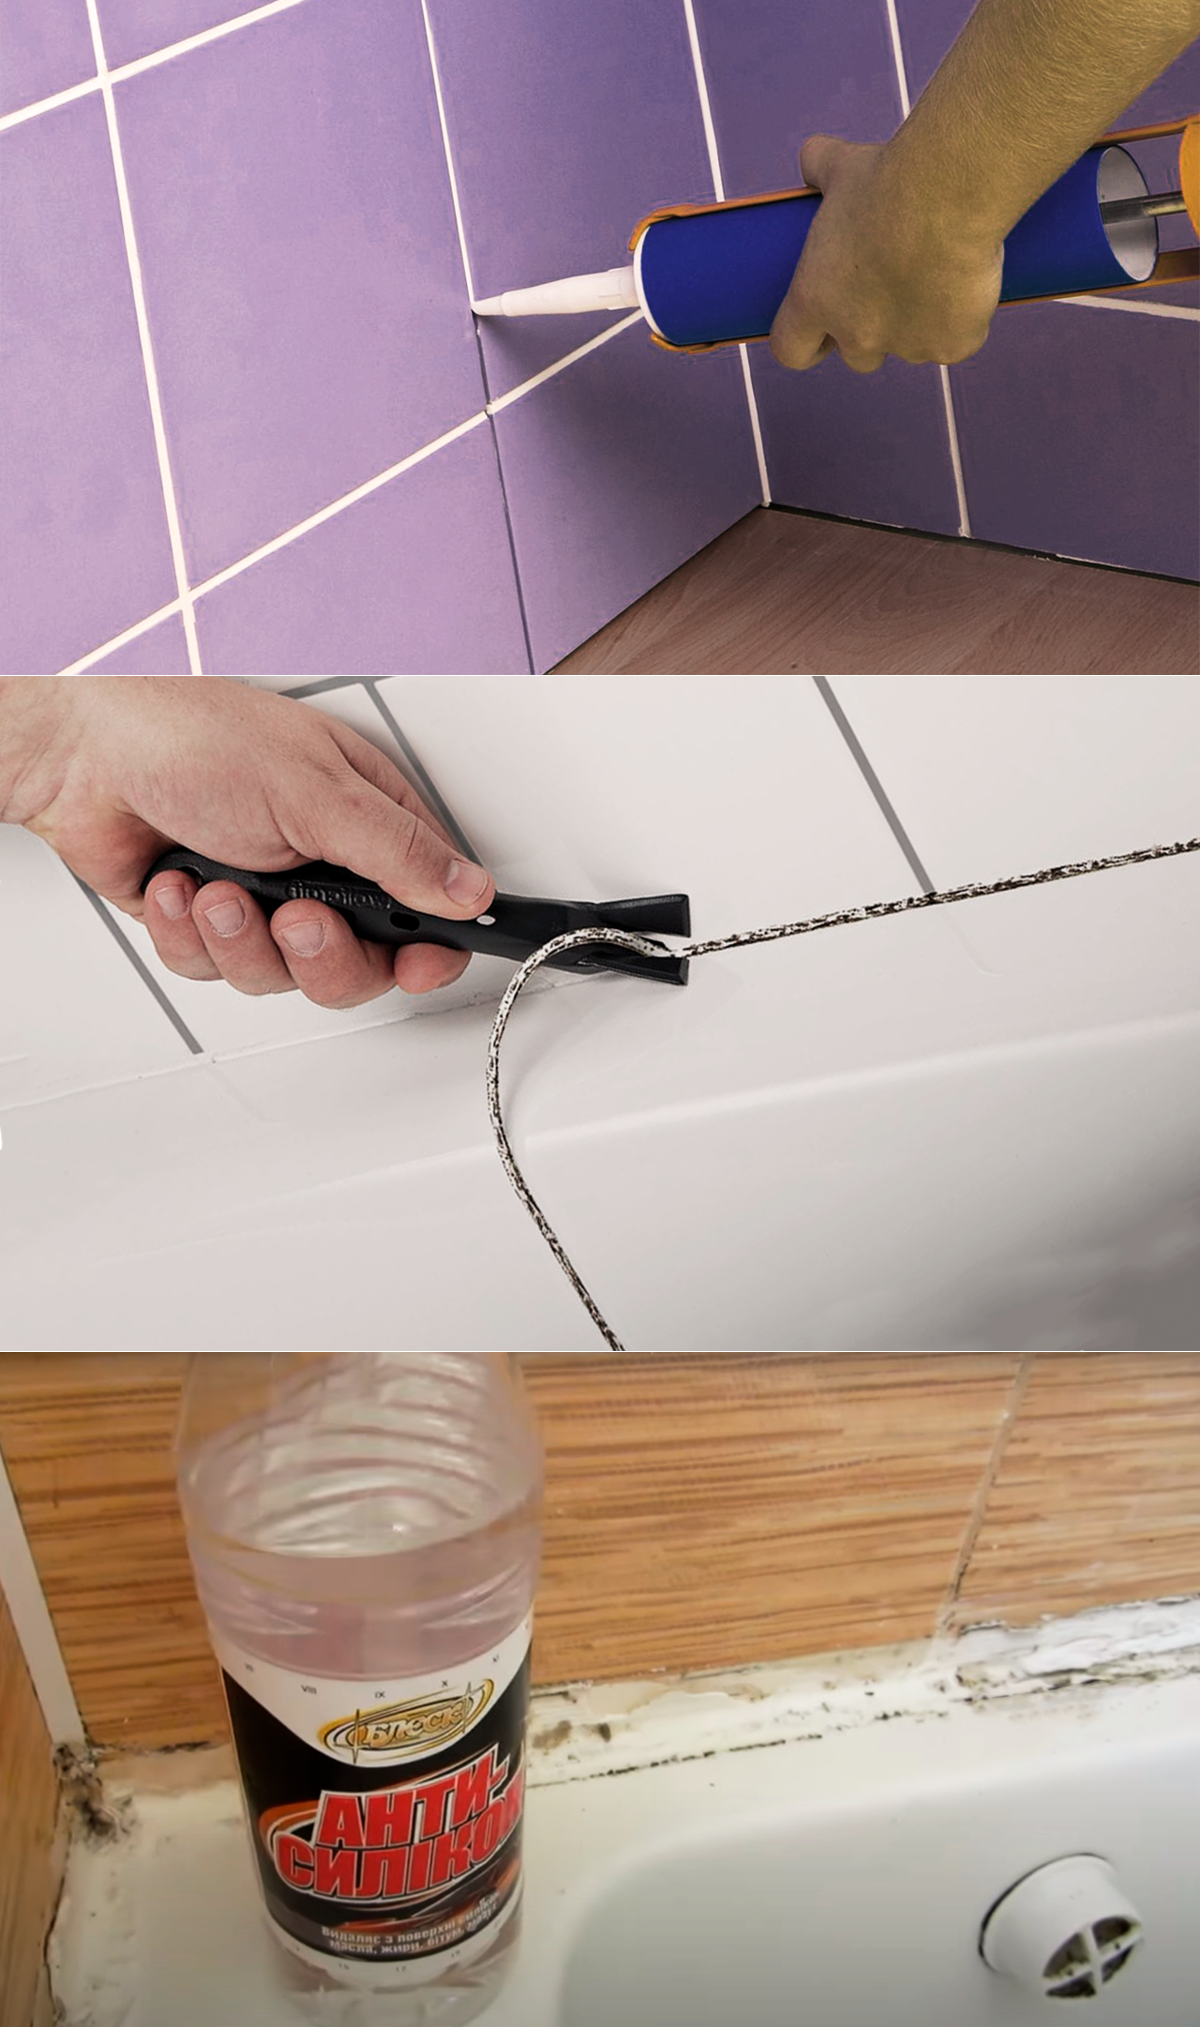 Чем удалить силиконовый герметик? как удалять в ванной, как отмыть и оттереть, как очистить и смыть старый герметик, как убрать с руки